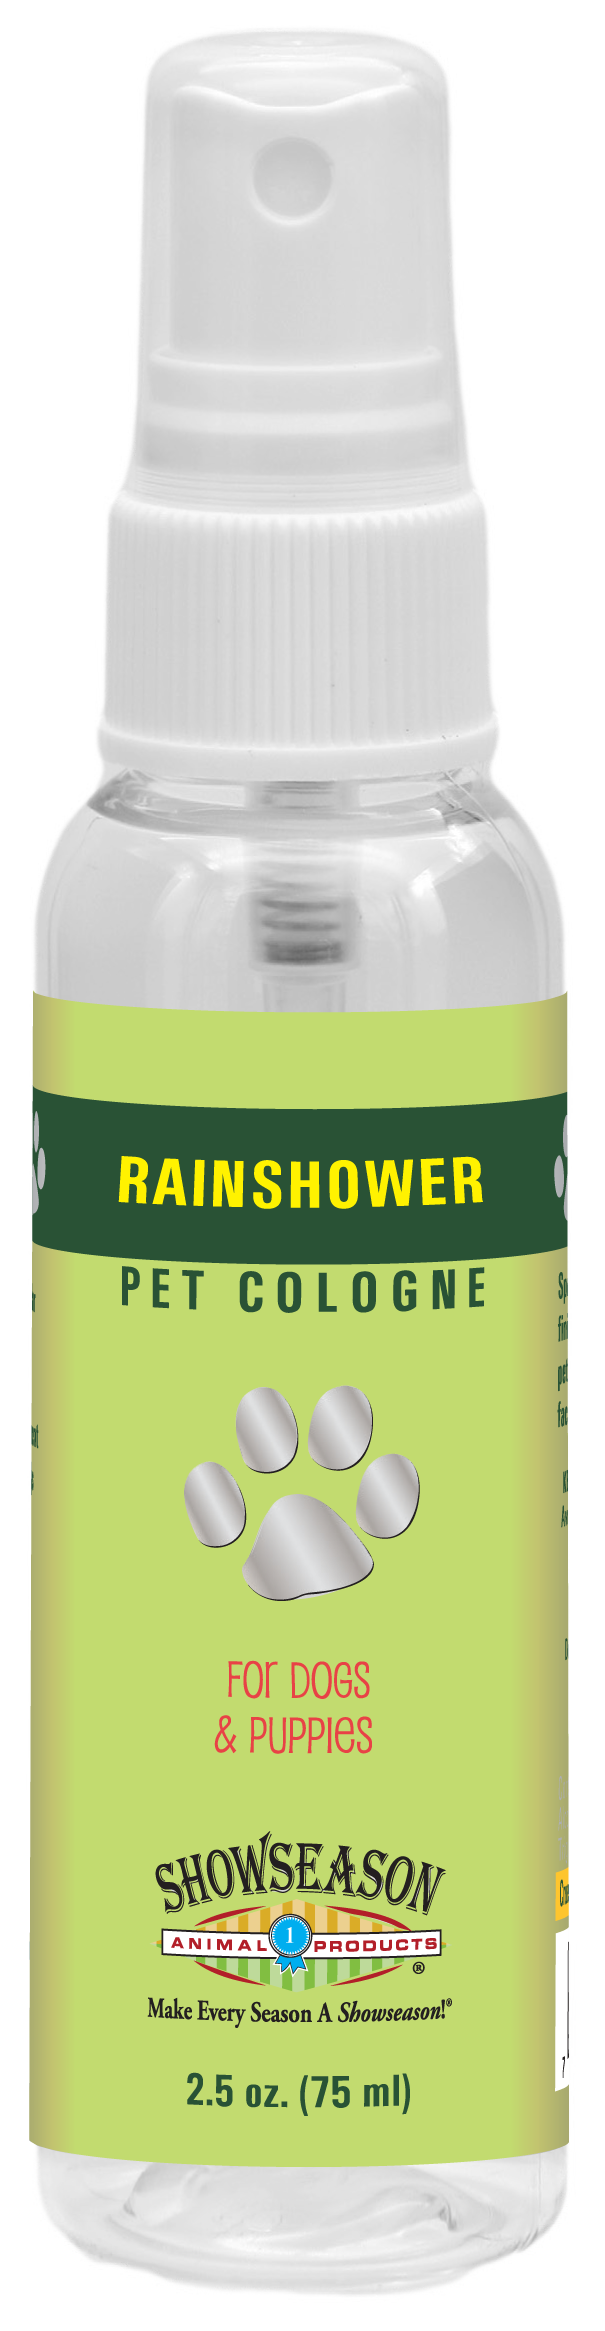 Rainshower Pet Cologne